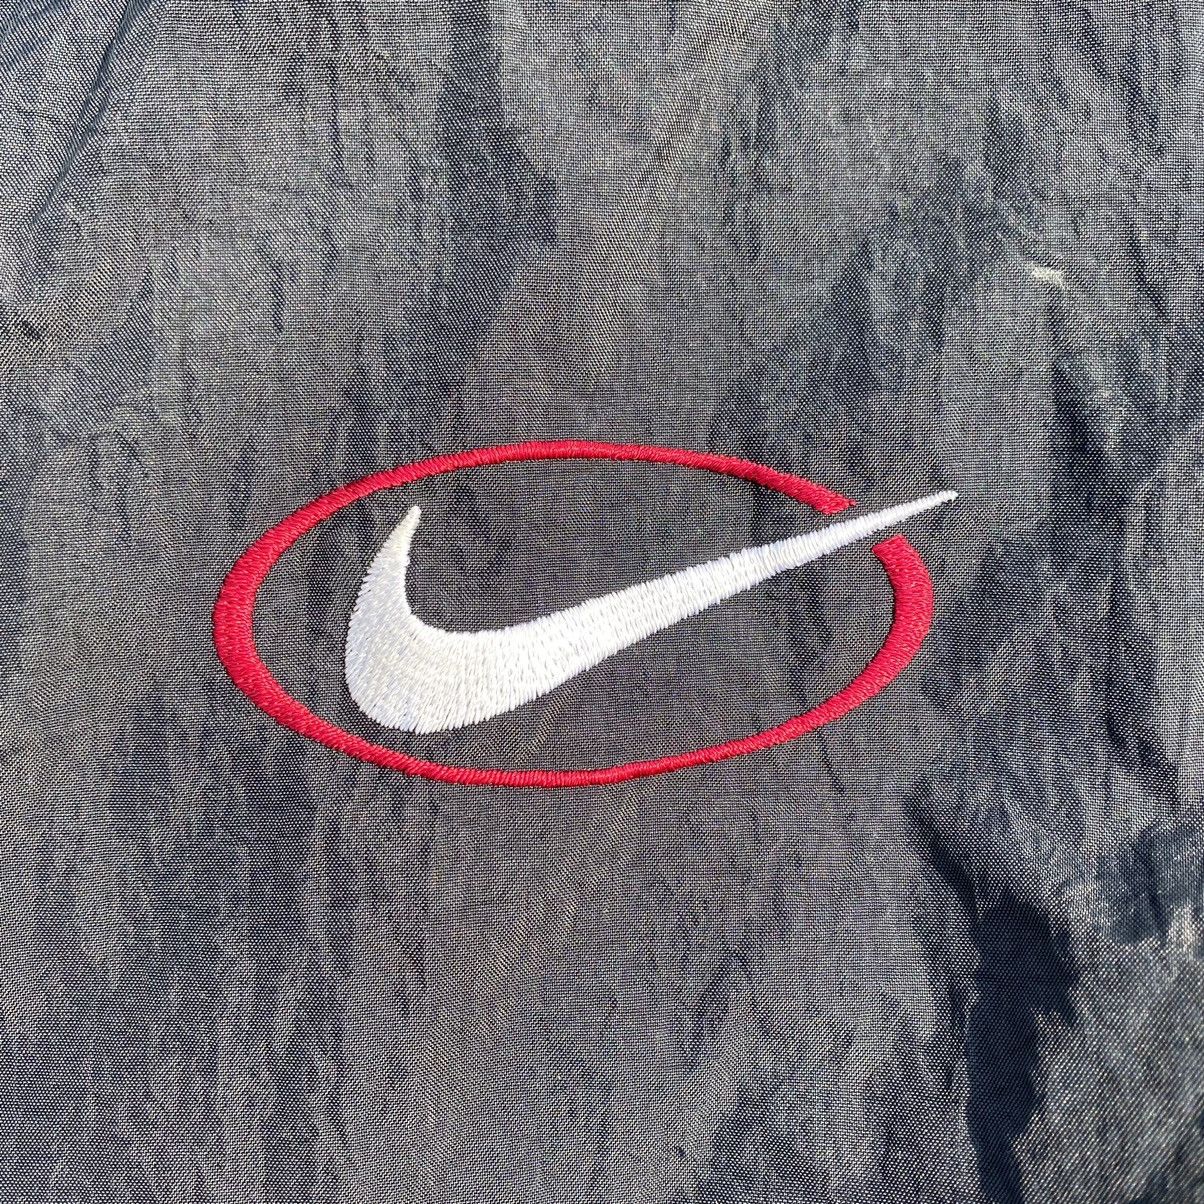 Nike Vintage 90s Nike Big Swoosh Jacket Size US L / EU 52-54 / 3 - 4 Thumbnail